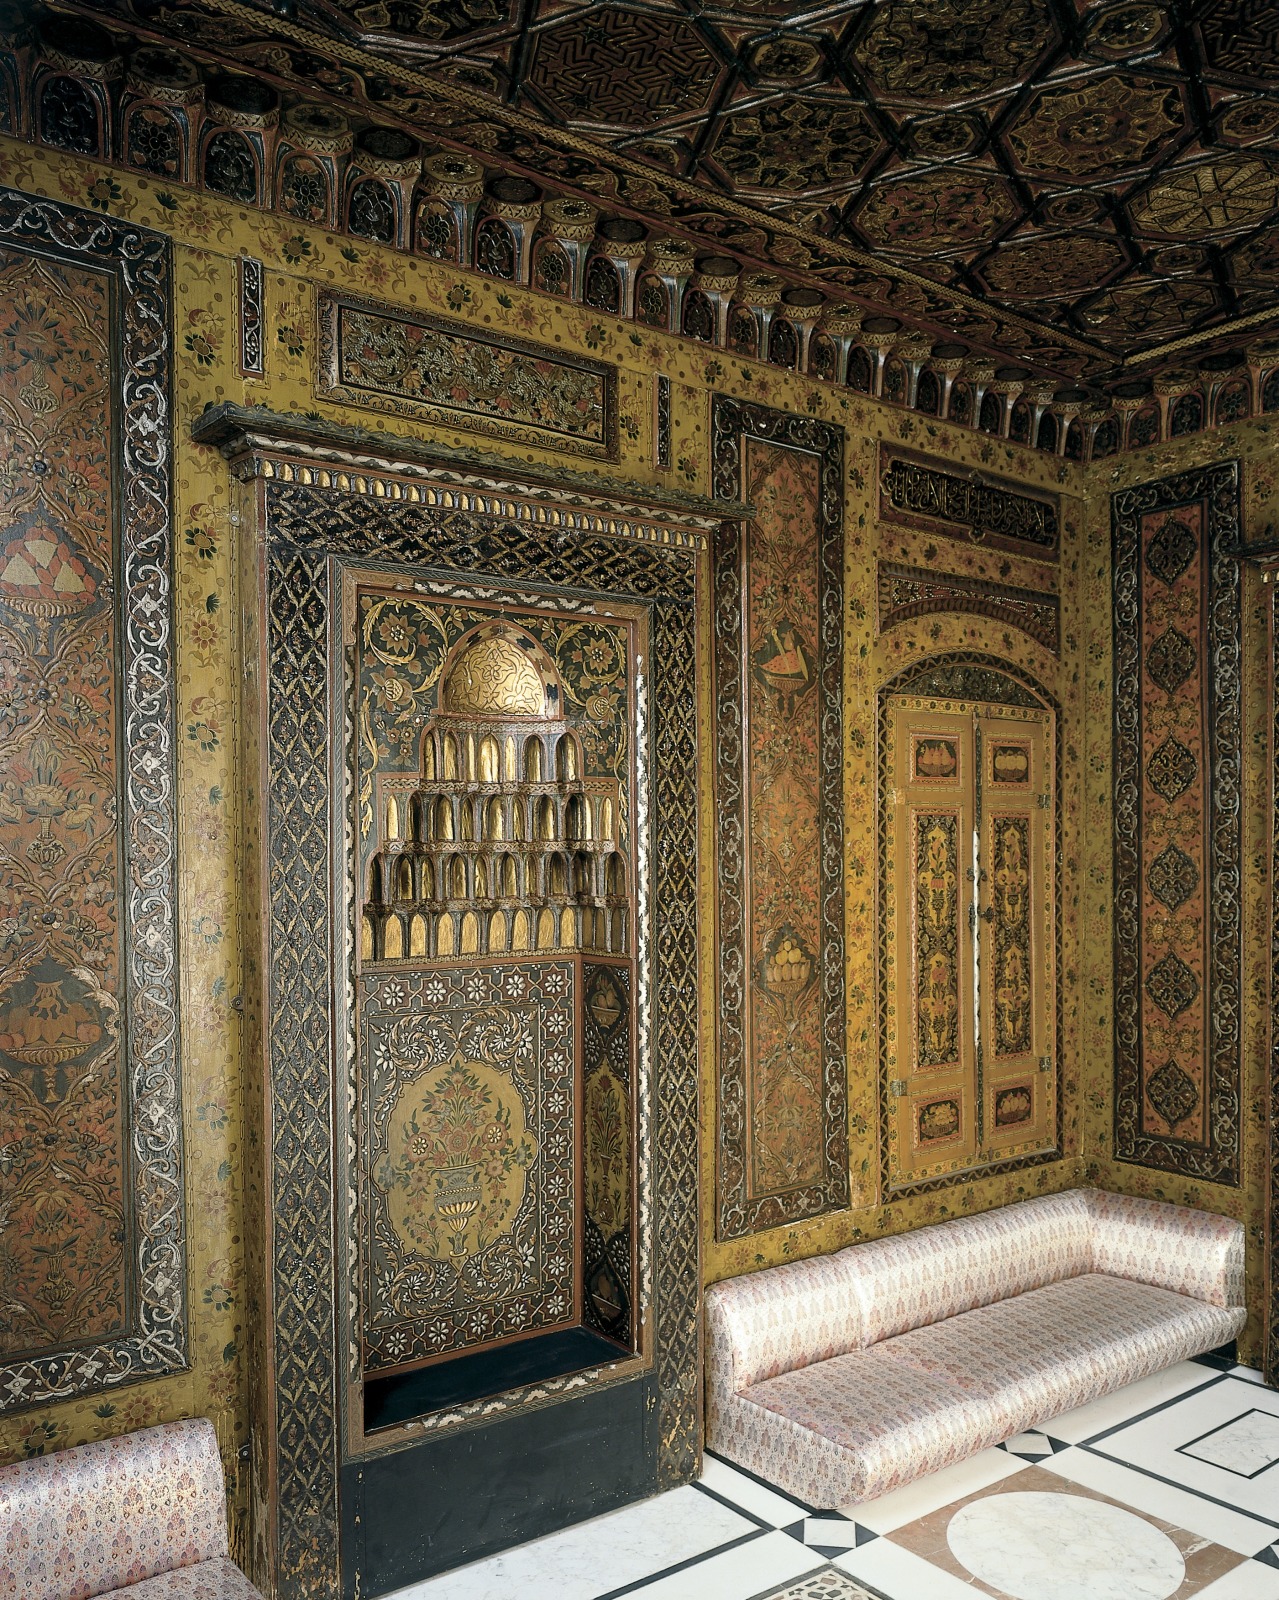 Period Room from Damascus, 1711-1712, Cincinnati Art Museum, Cincinnati, OH, USA.